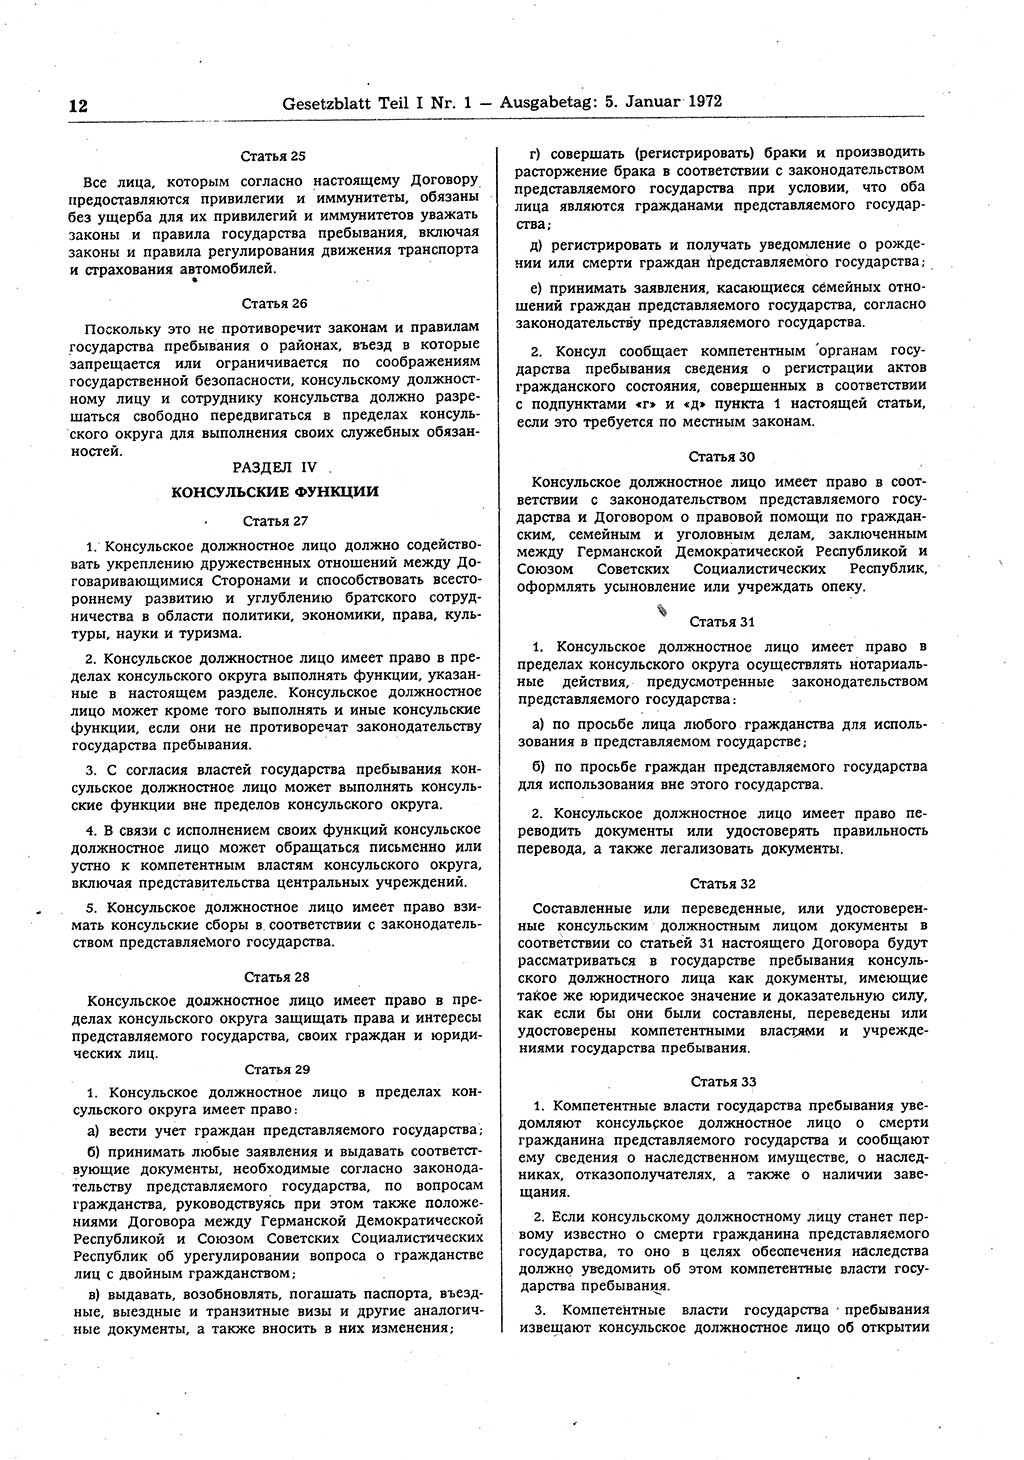 Gesetzblatt (GBl.) der Deutschen Demokratischen Republik (DDR) Teil Ⅰ 1972, Seite 12 (GBl. DDR Ⅰ 1972, S. 12)